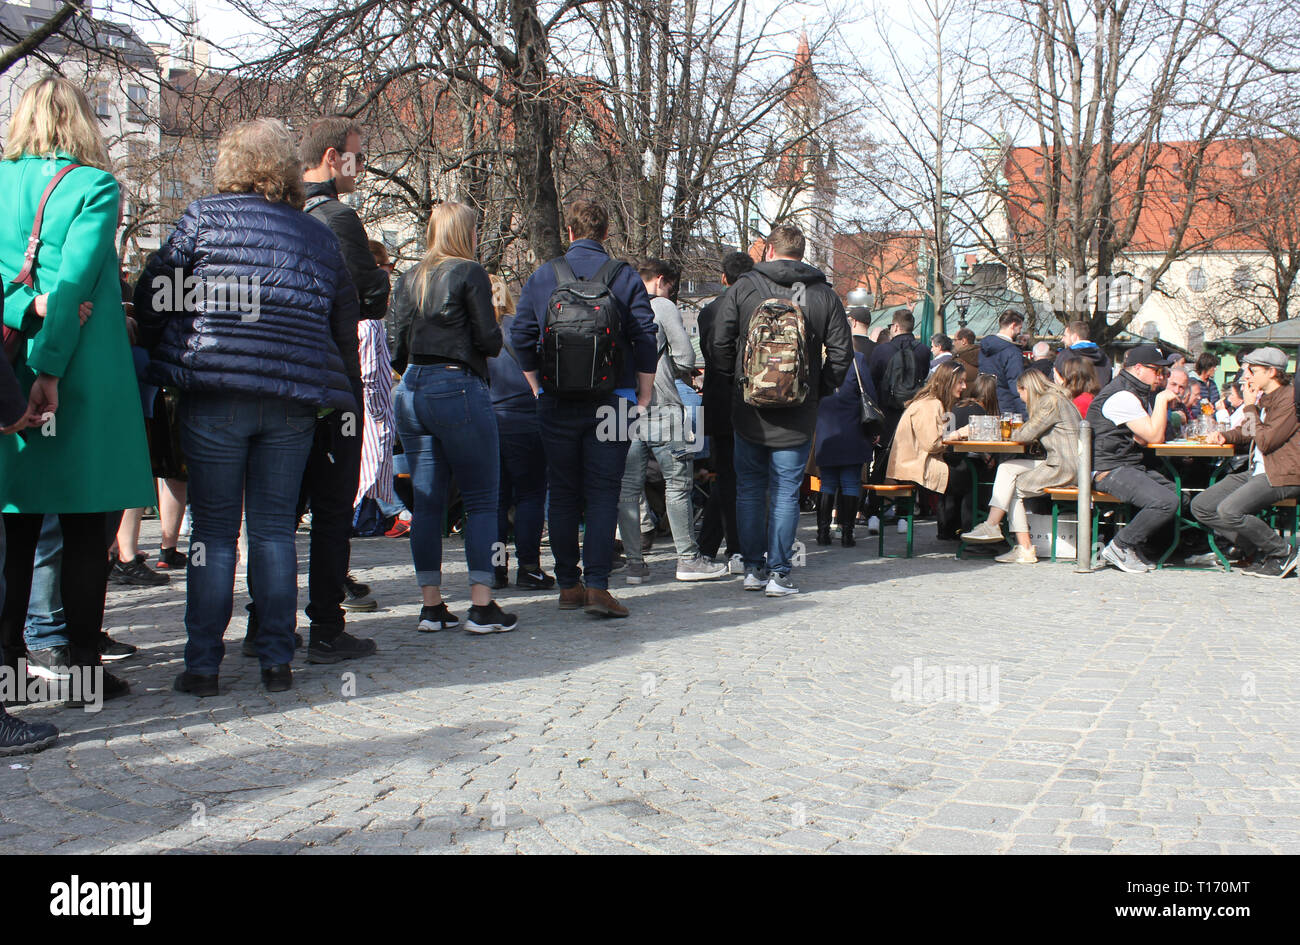 Les gens faisant la queue à l'extérieur pour une bière gratuite dans le jardin de la bière, Munich, Viktualienmarkt. Offre spéciale en raison de 125 Jubilé anniversaire de la brasserie. Banque D'Images